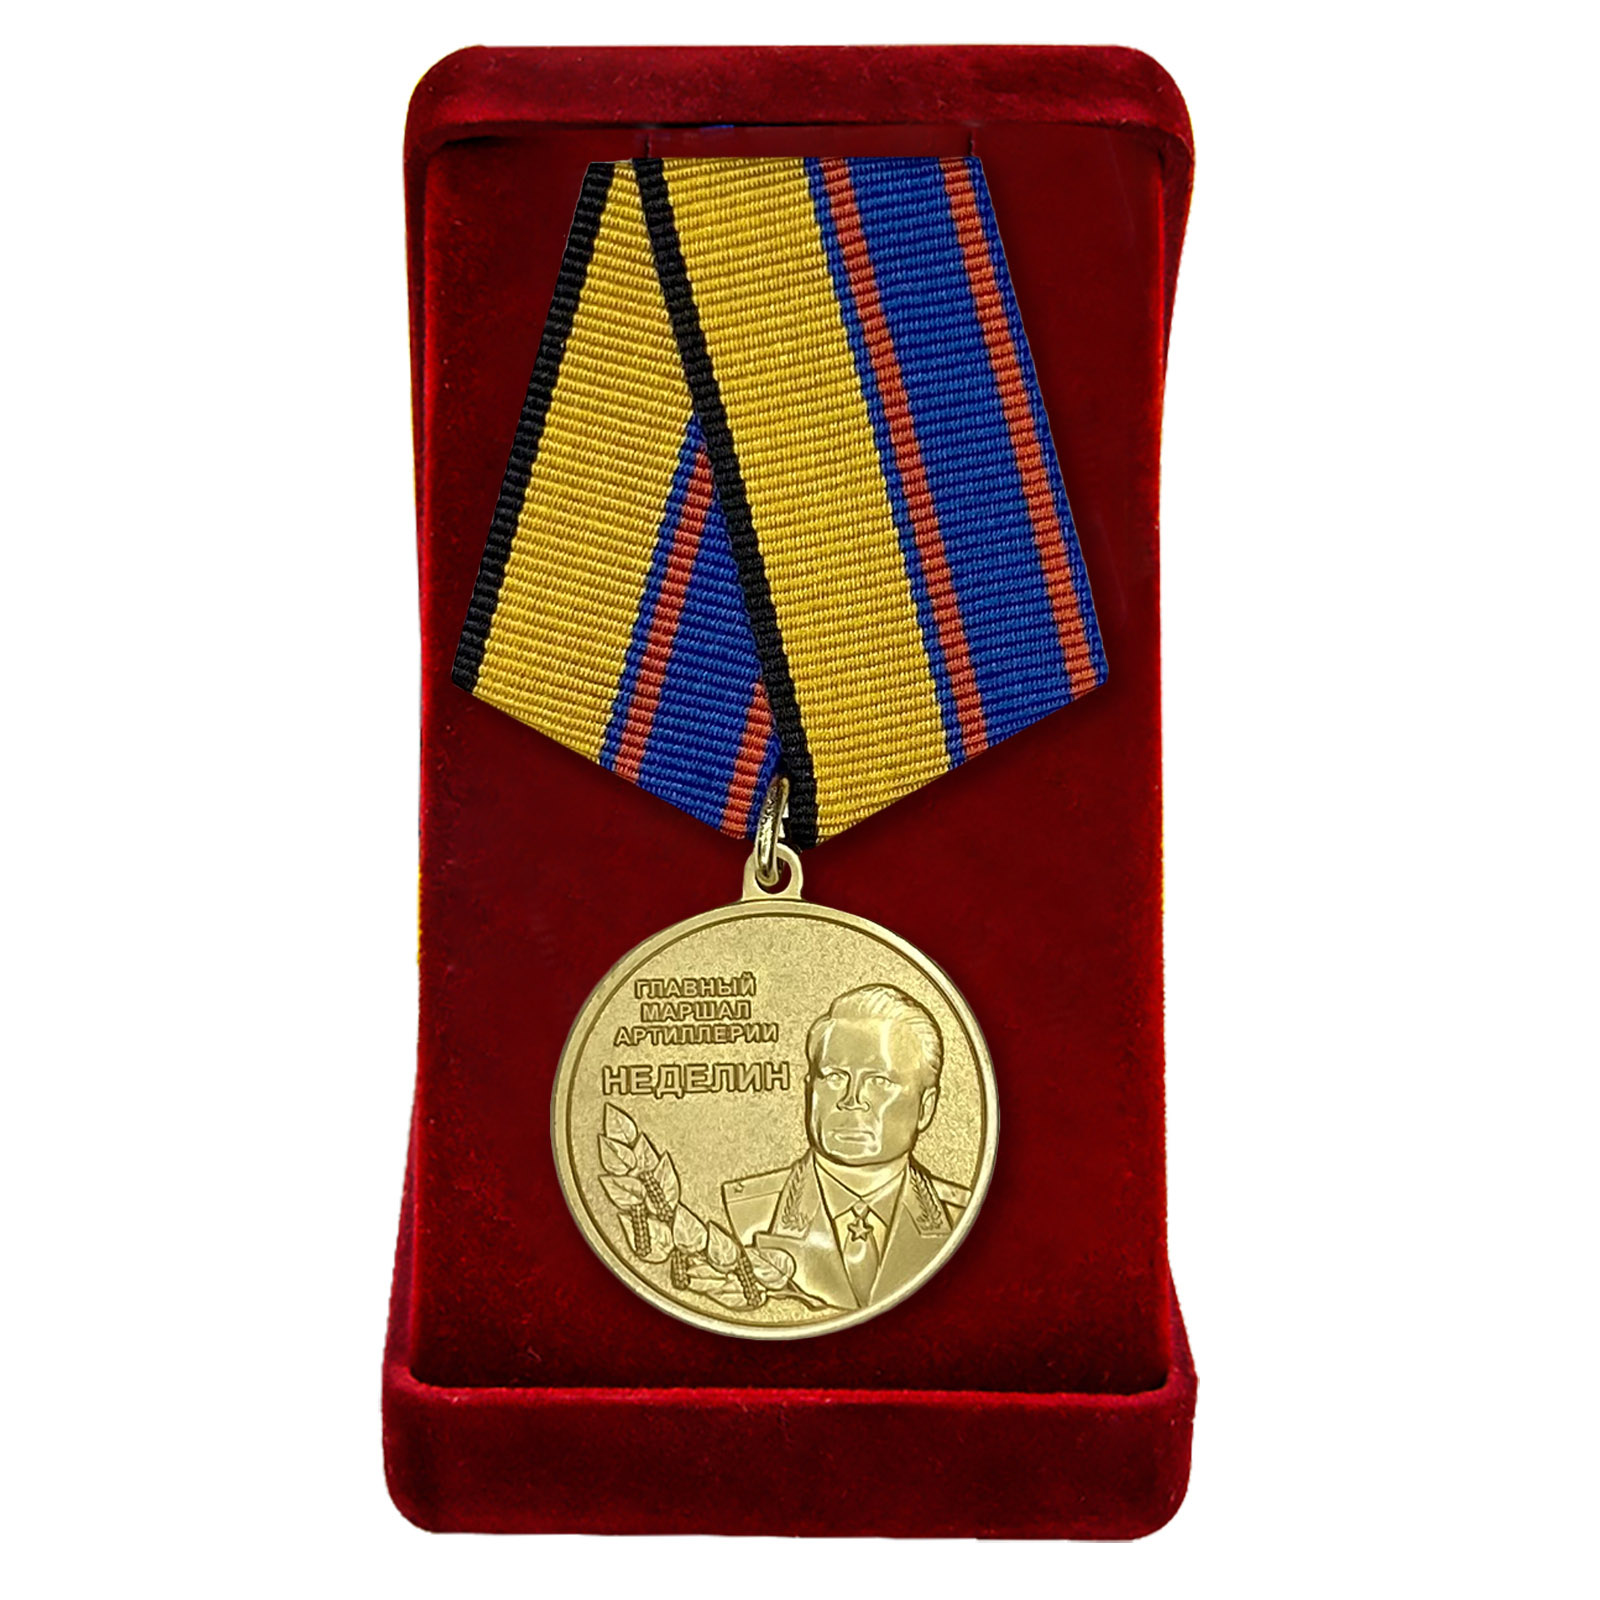 Купить медаль Главный маршал артиллерии Неделин с доставкой в ваш город